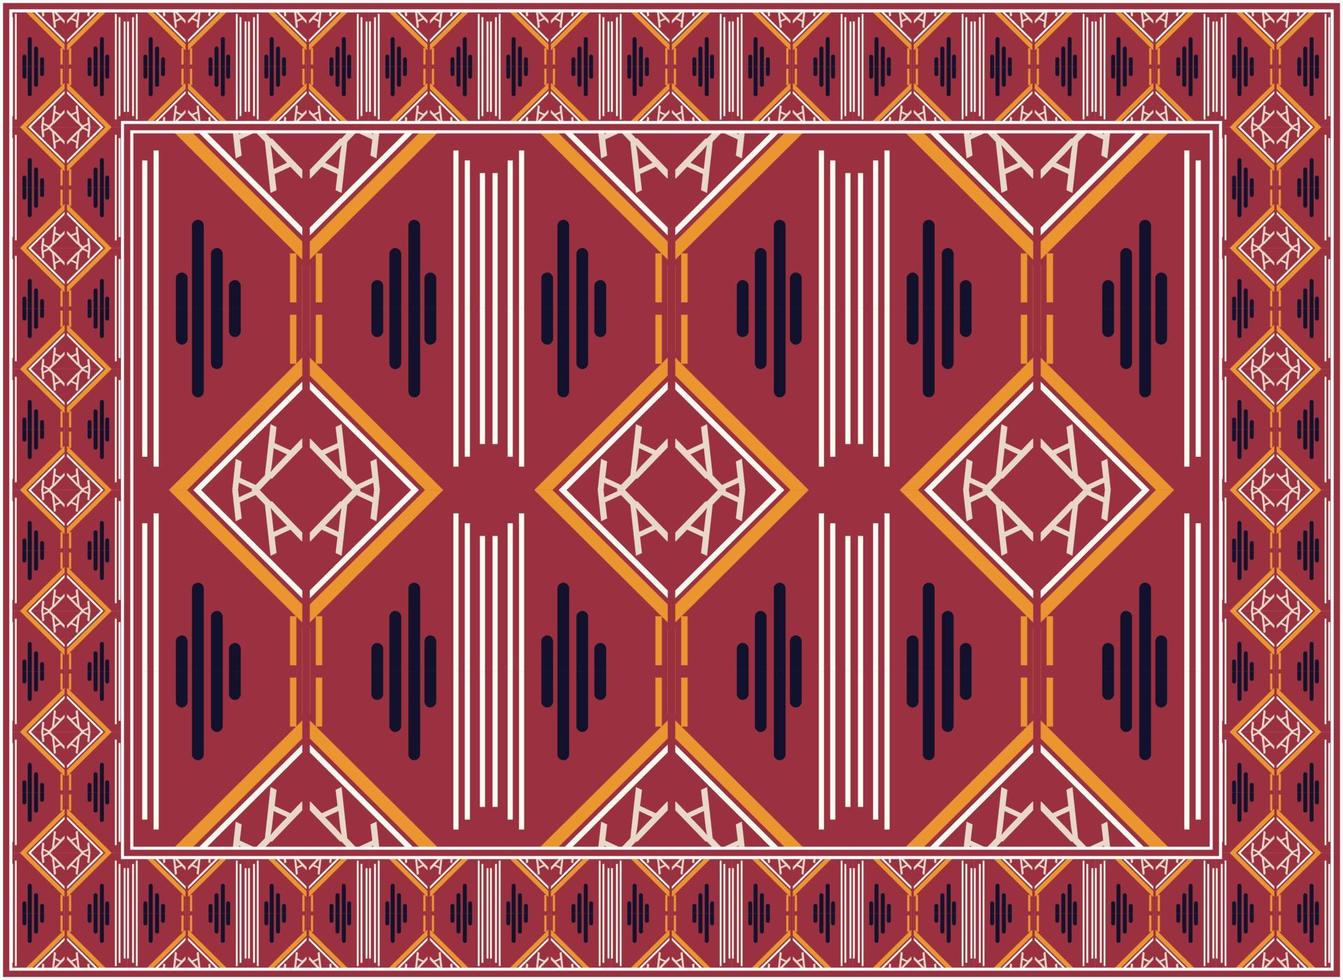 Perzisch tapijt modern leven kamer, motief etnisch naadloos patroon boho Perzisch tapijt leven kamer Afrikaanse etnisch aztec stijl ontwerp voor afdrukken kleding stof tapijten, handdoeken, zakdoeken, sjaals tapijt, vector